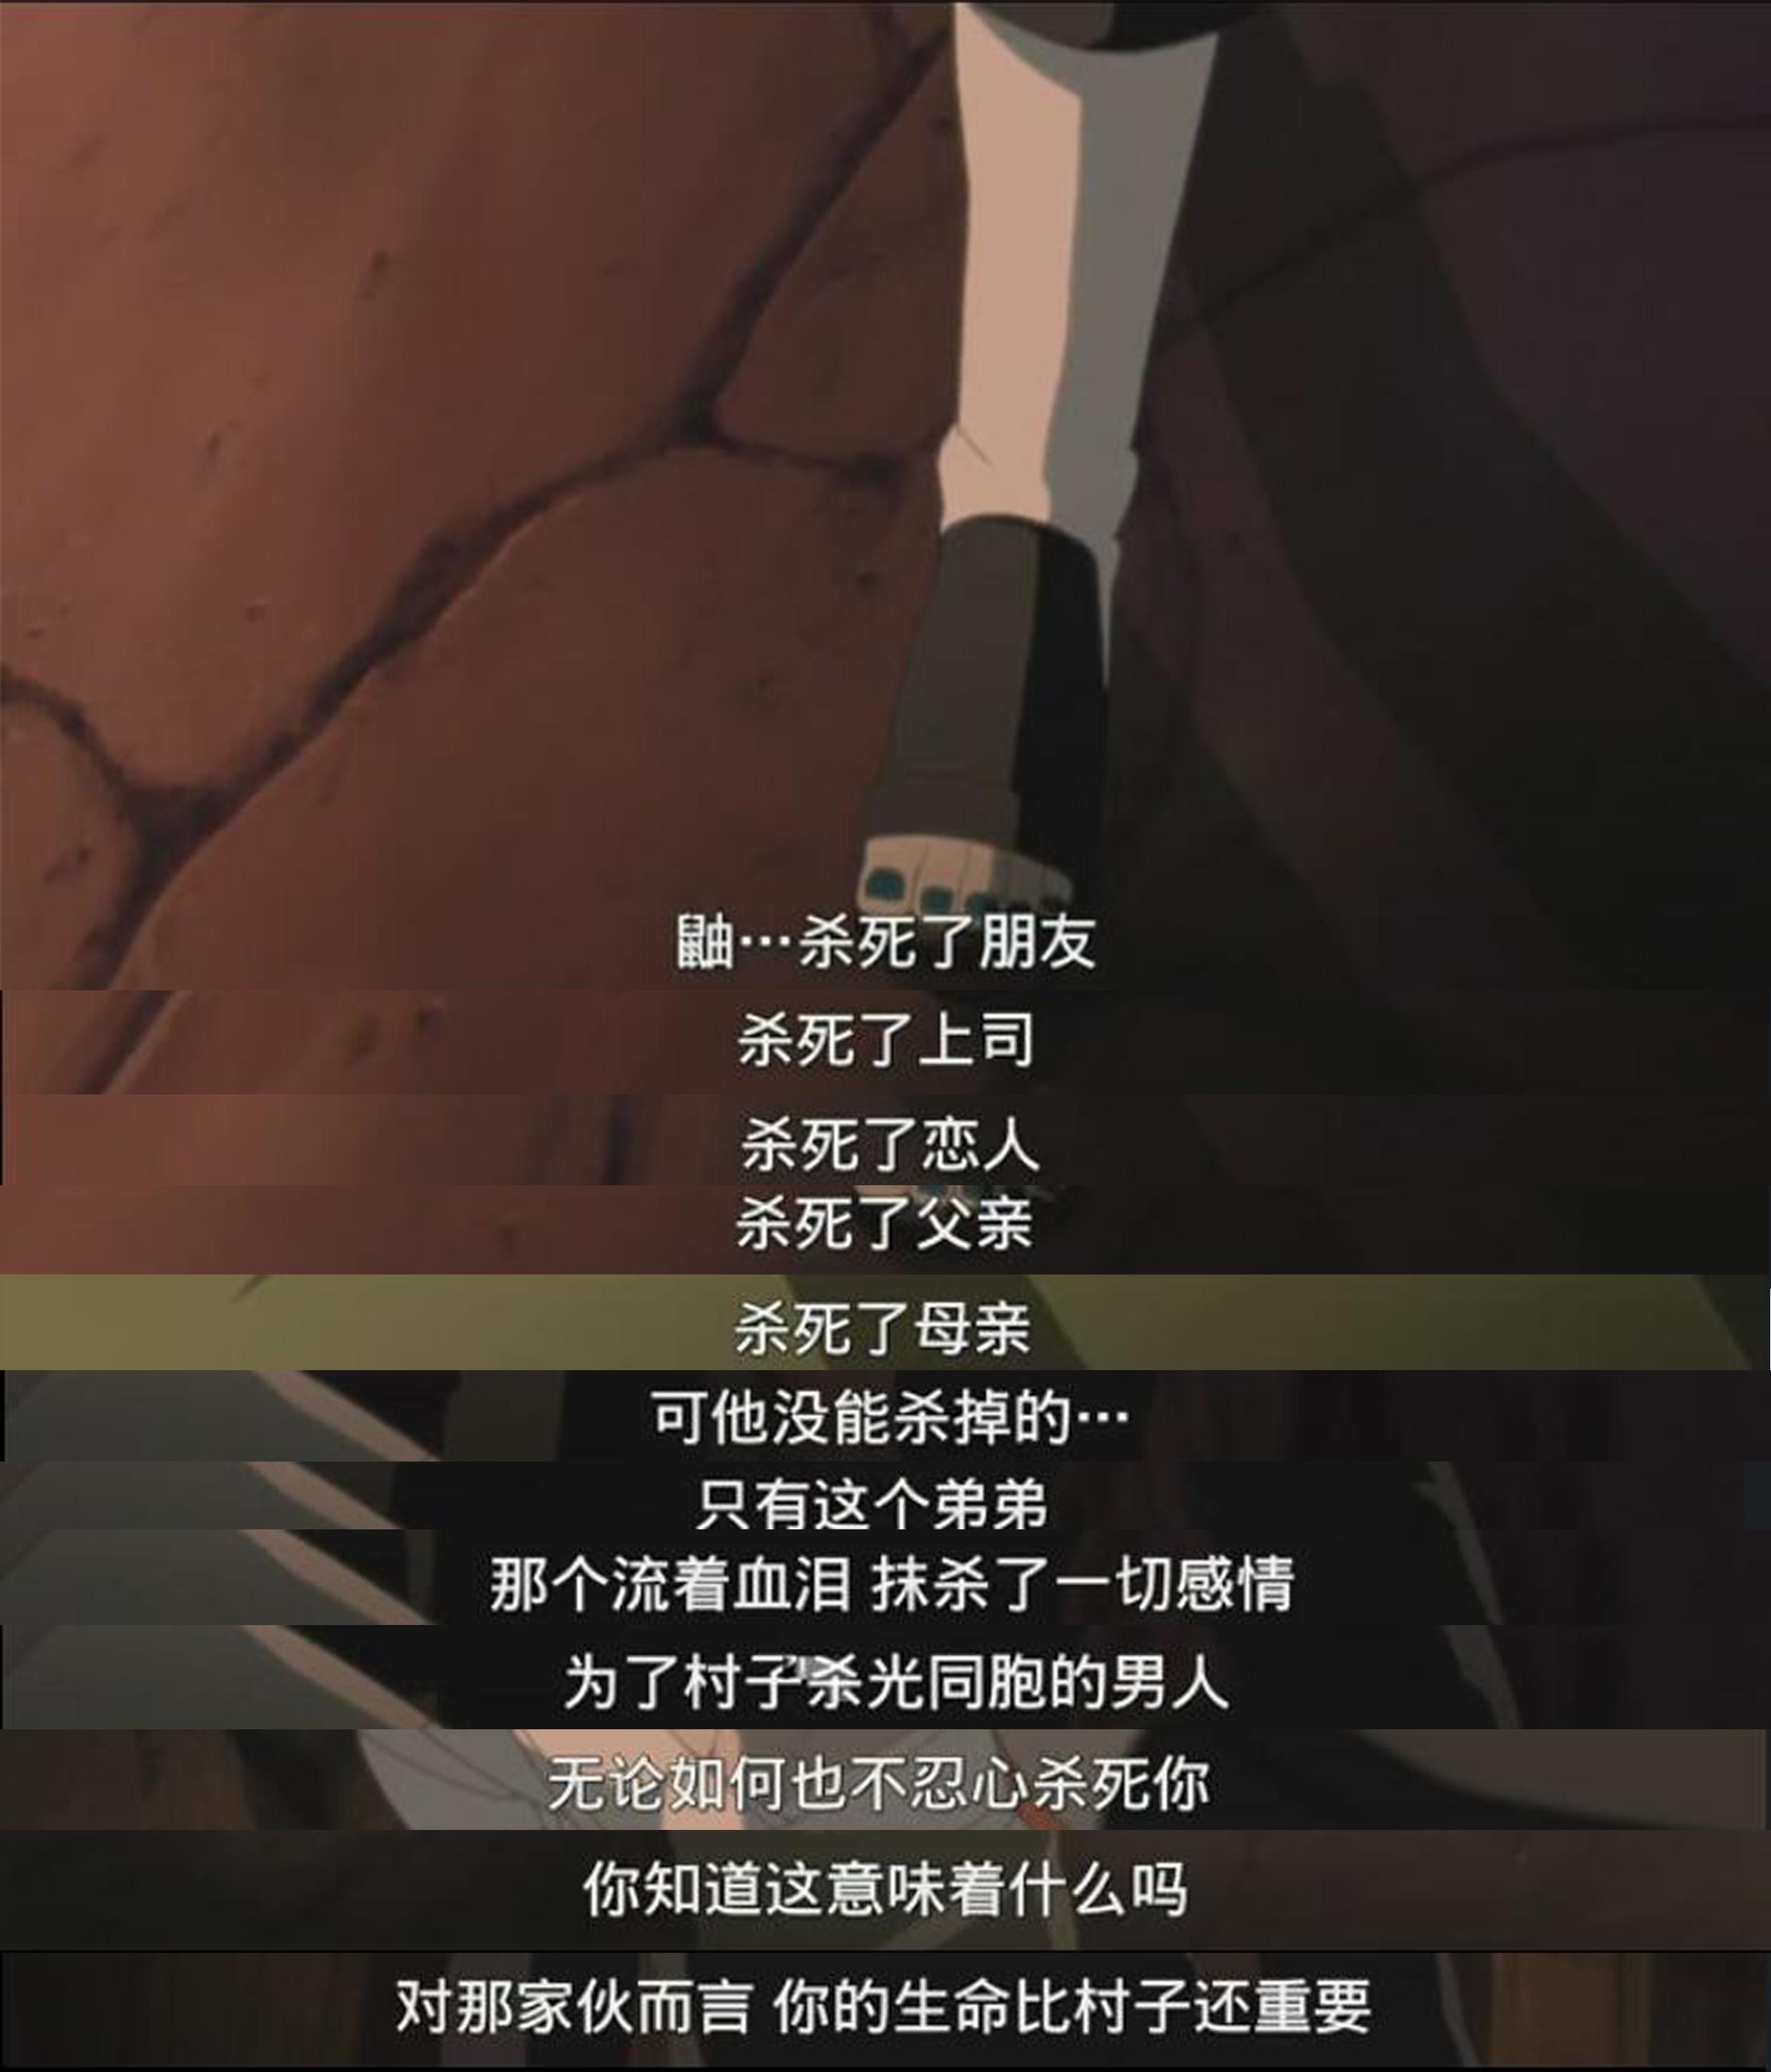 《火影忍者：终极风暴羁绊》DLC“大筒木羽衣”预告 1月25日发售-咸鱼单机官网